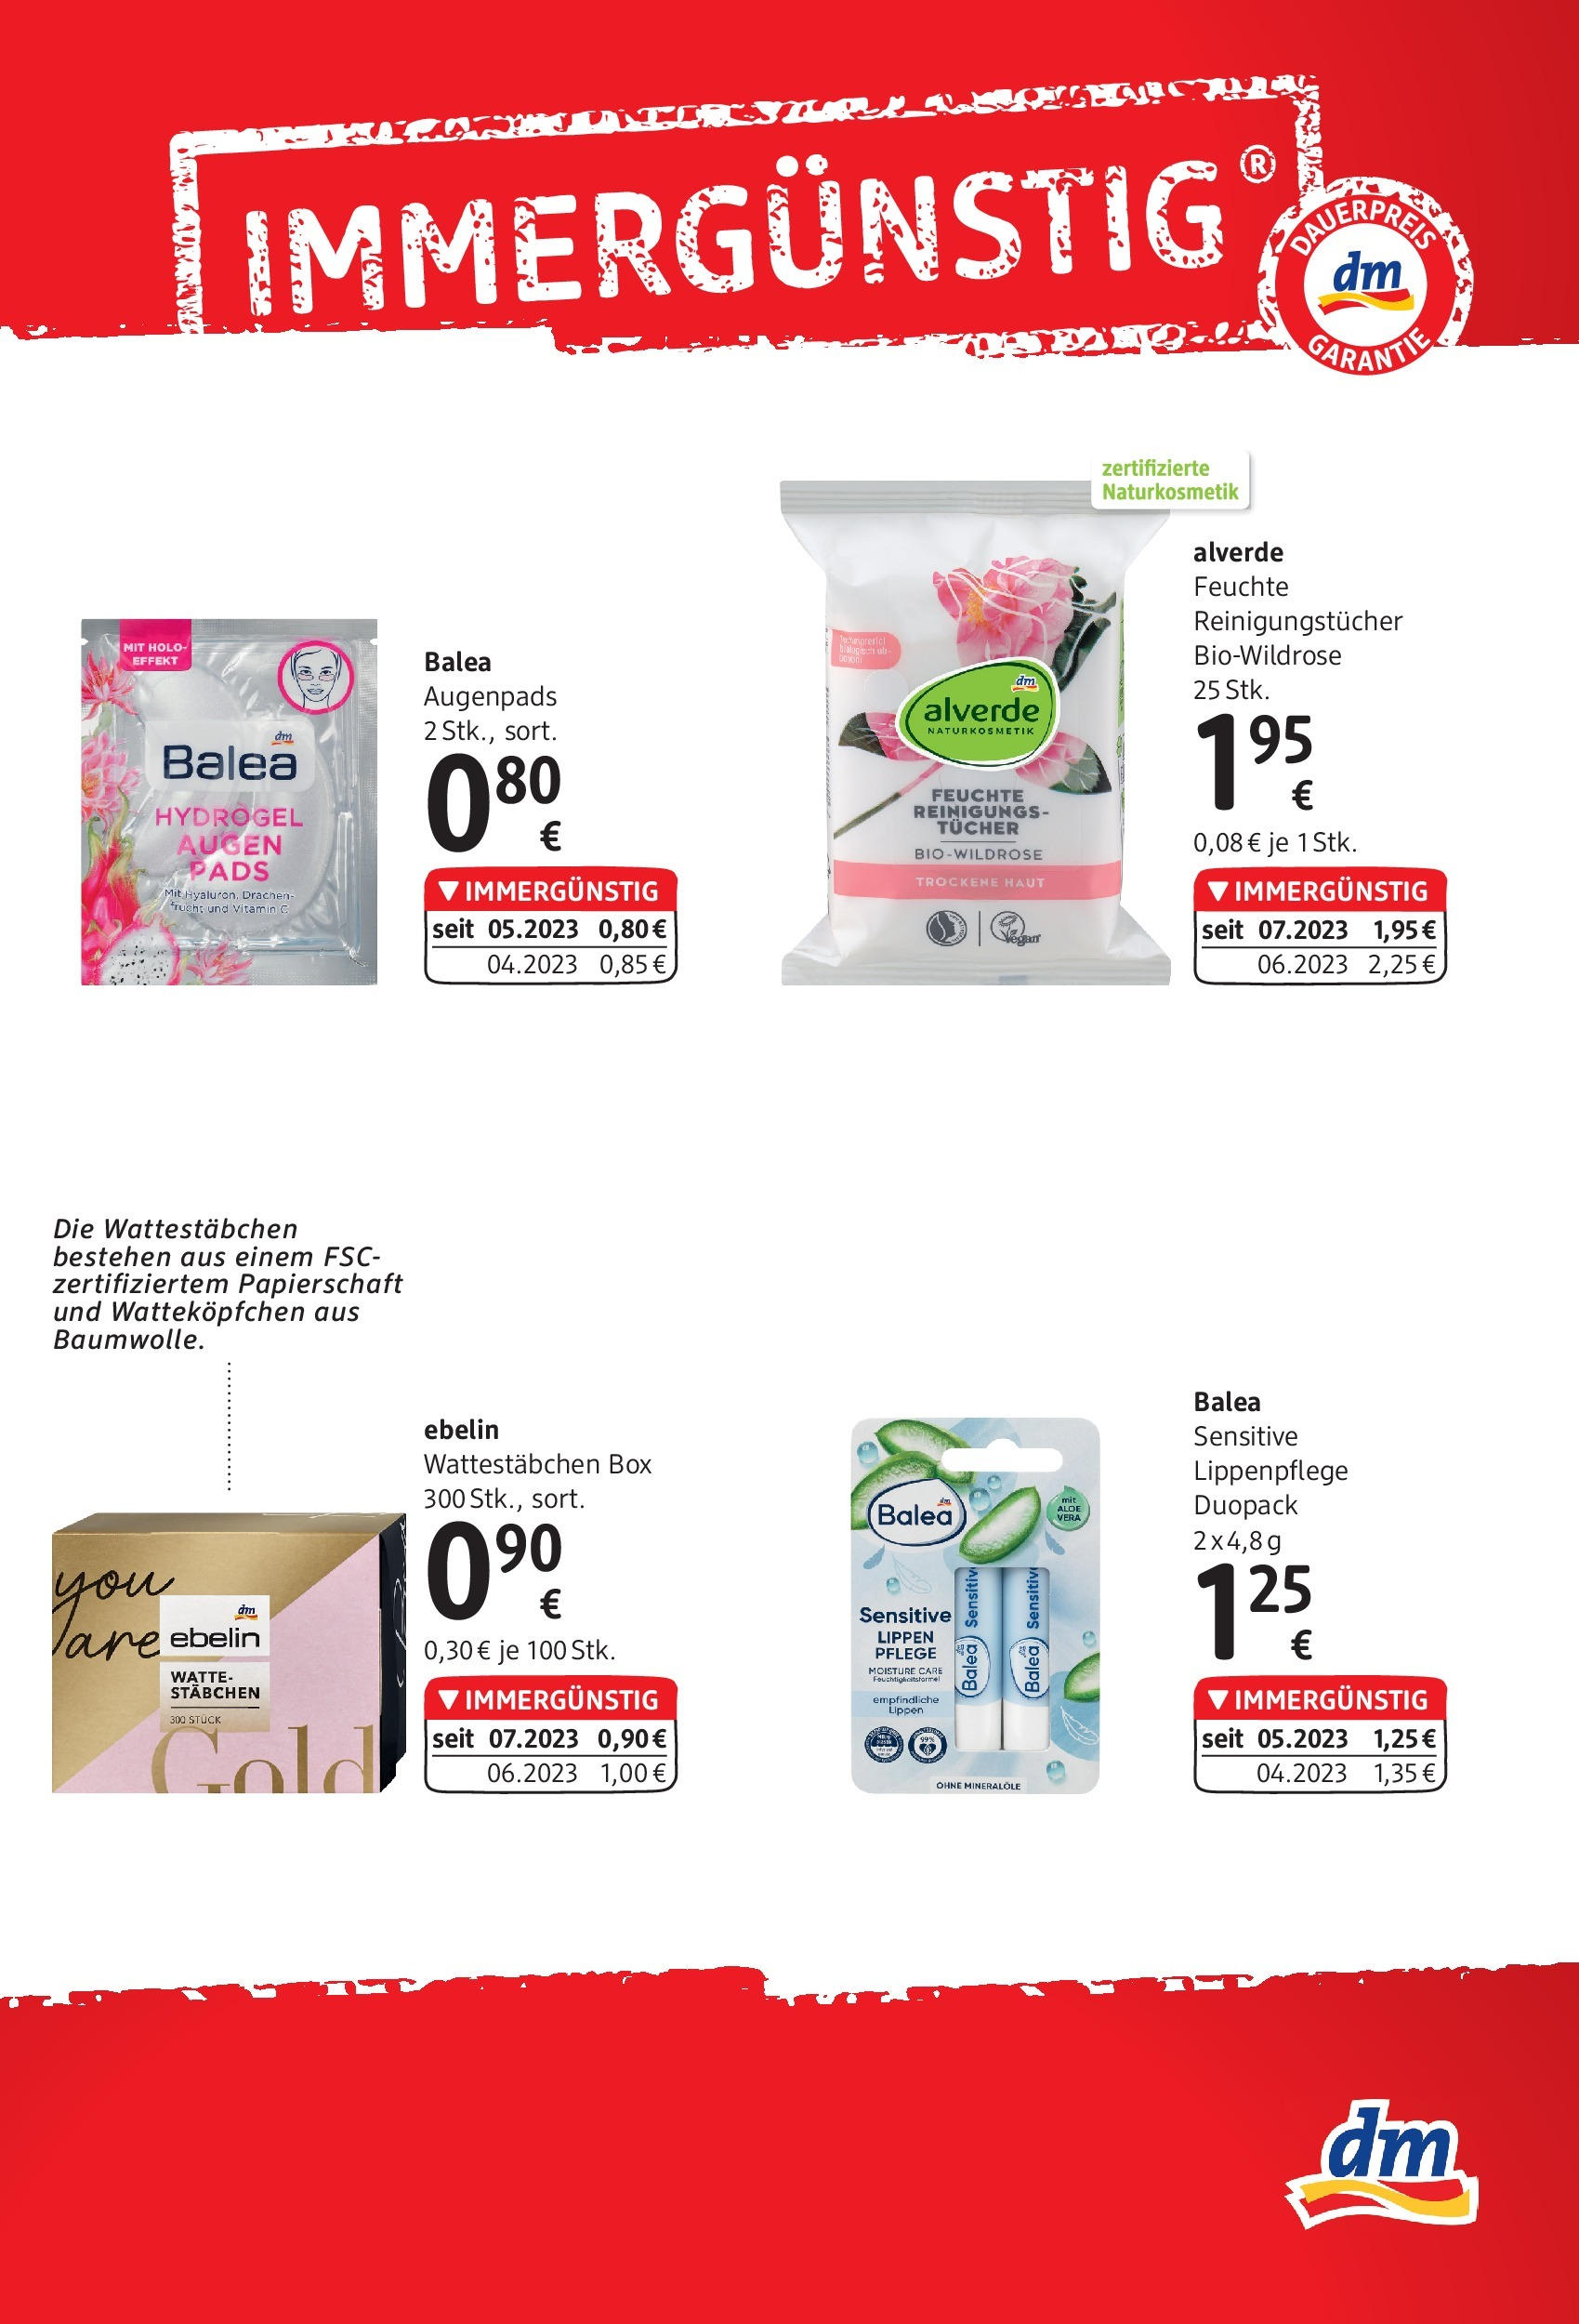 dm drogerie markt Flugblatt September 2023 von 31.08.2023 - Aktuelle Angebote | Seite: 2 | Produkte: Box, Haut Make-up Entferner, Augen Make-Up Entferner, Reinigungstücher